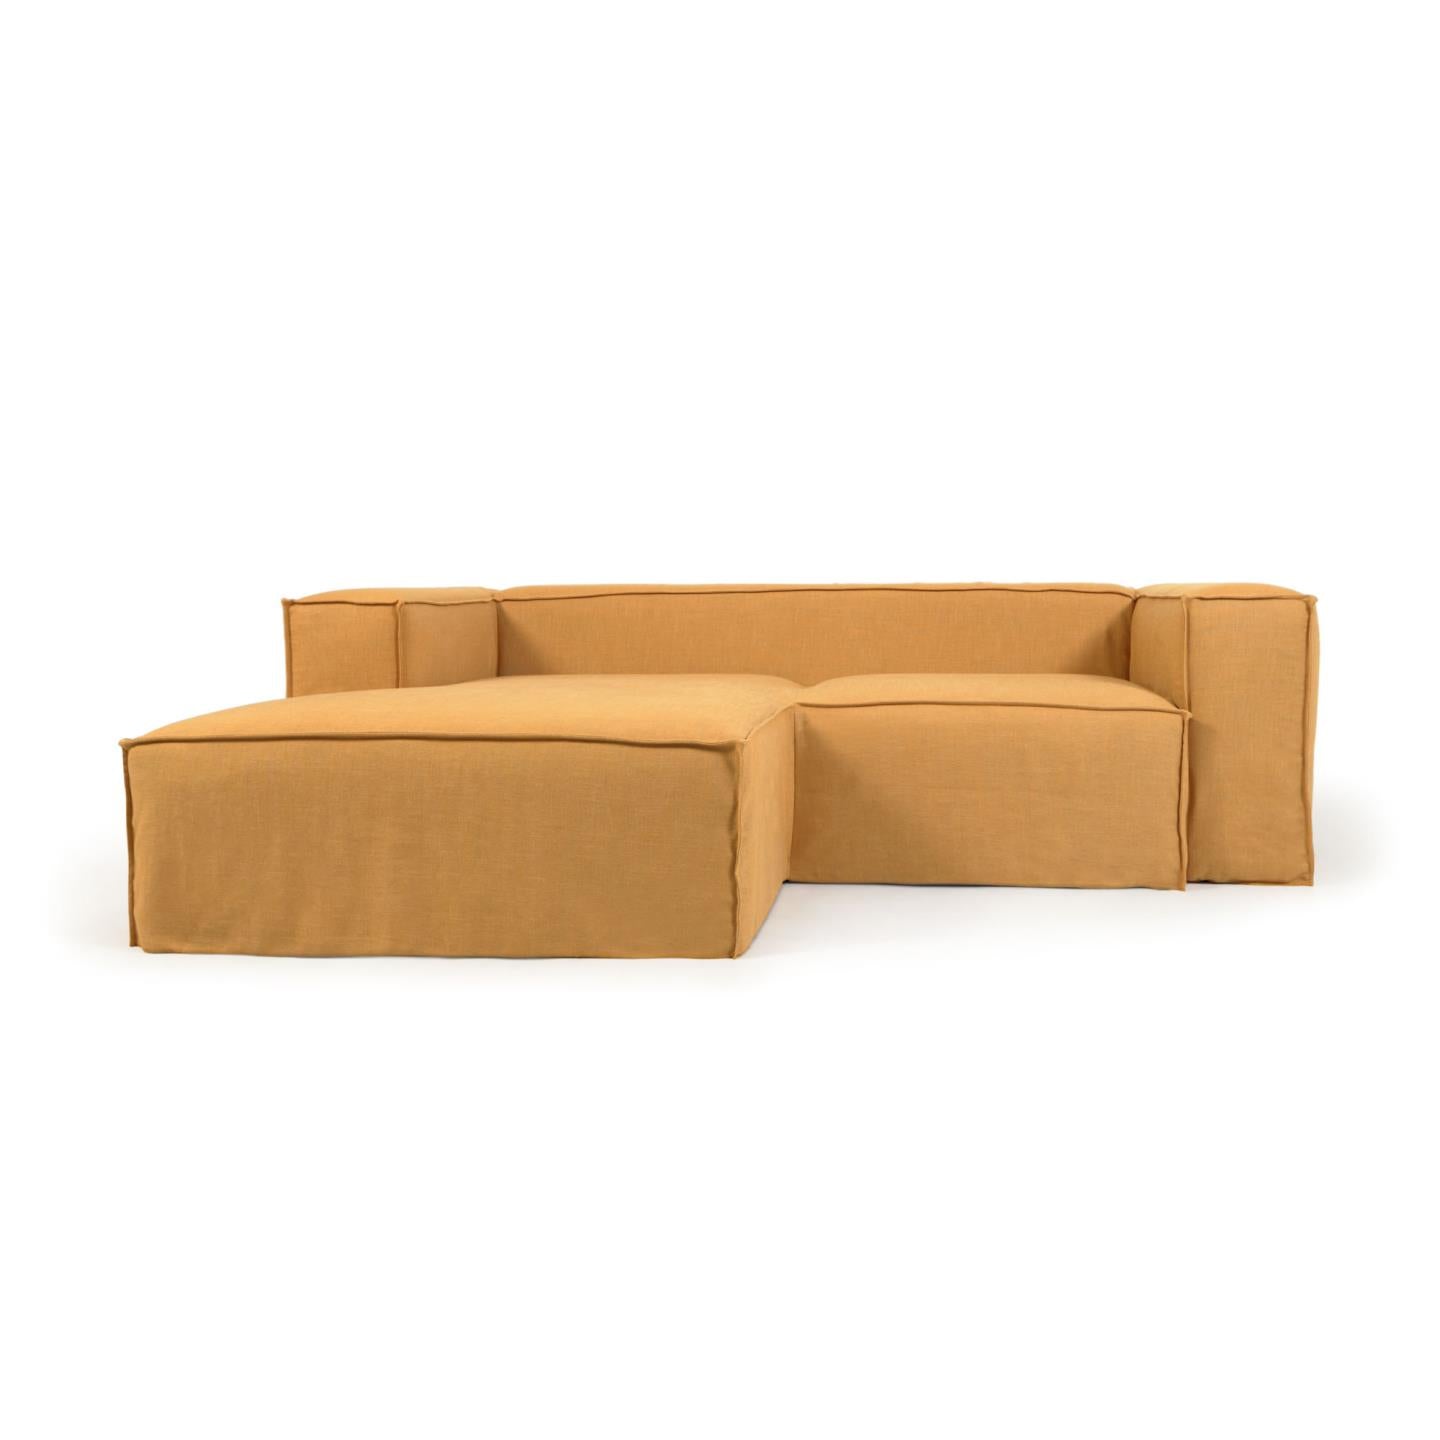 Blok 2 személyes kanapé bal oldali fekvőfotellel és levehető huzattal, mustárszínű vászon, 240 cm